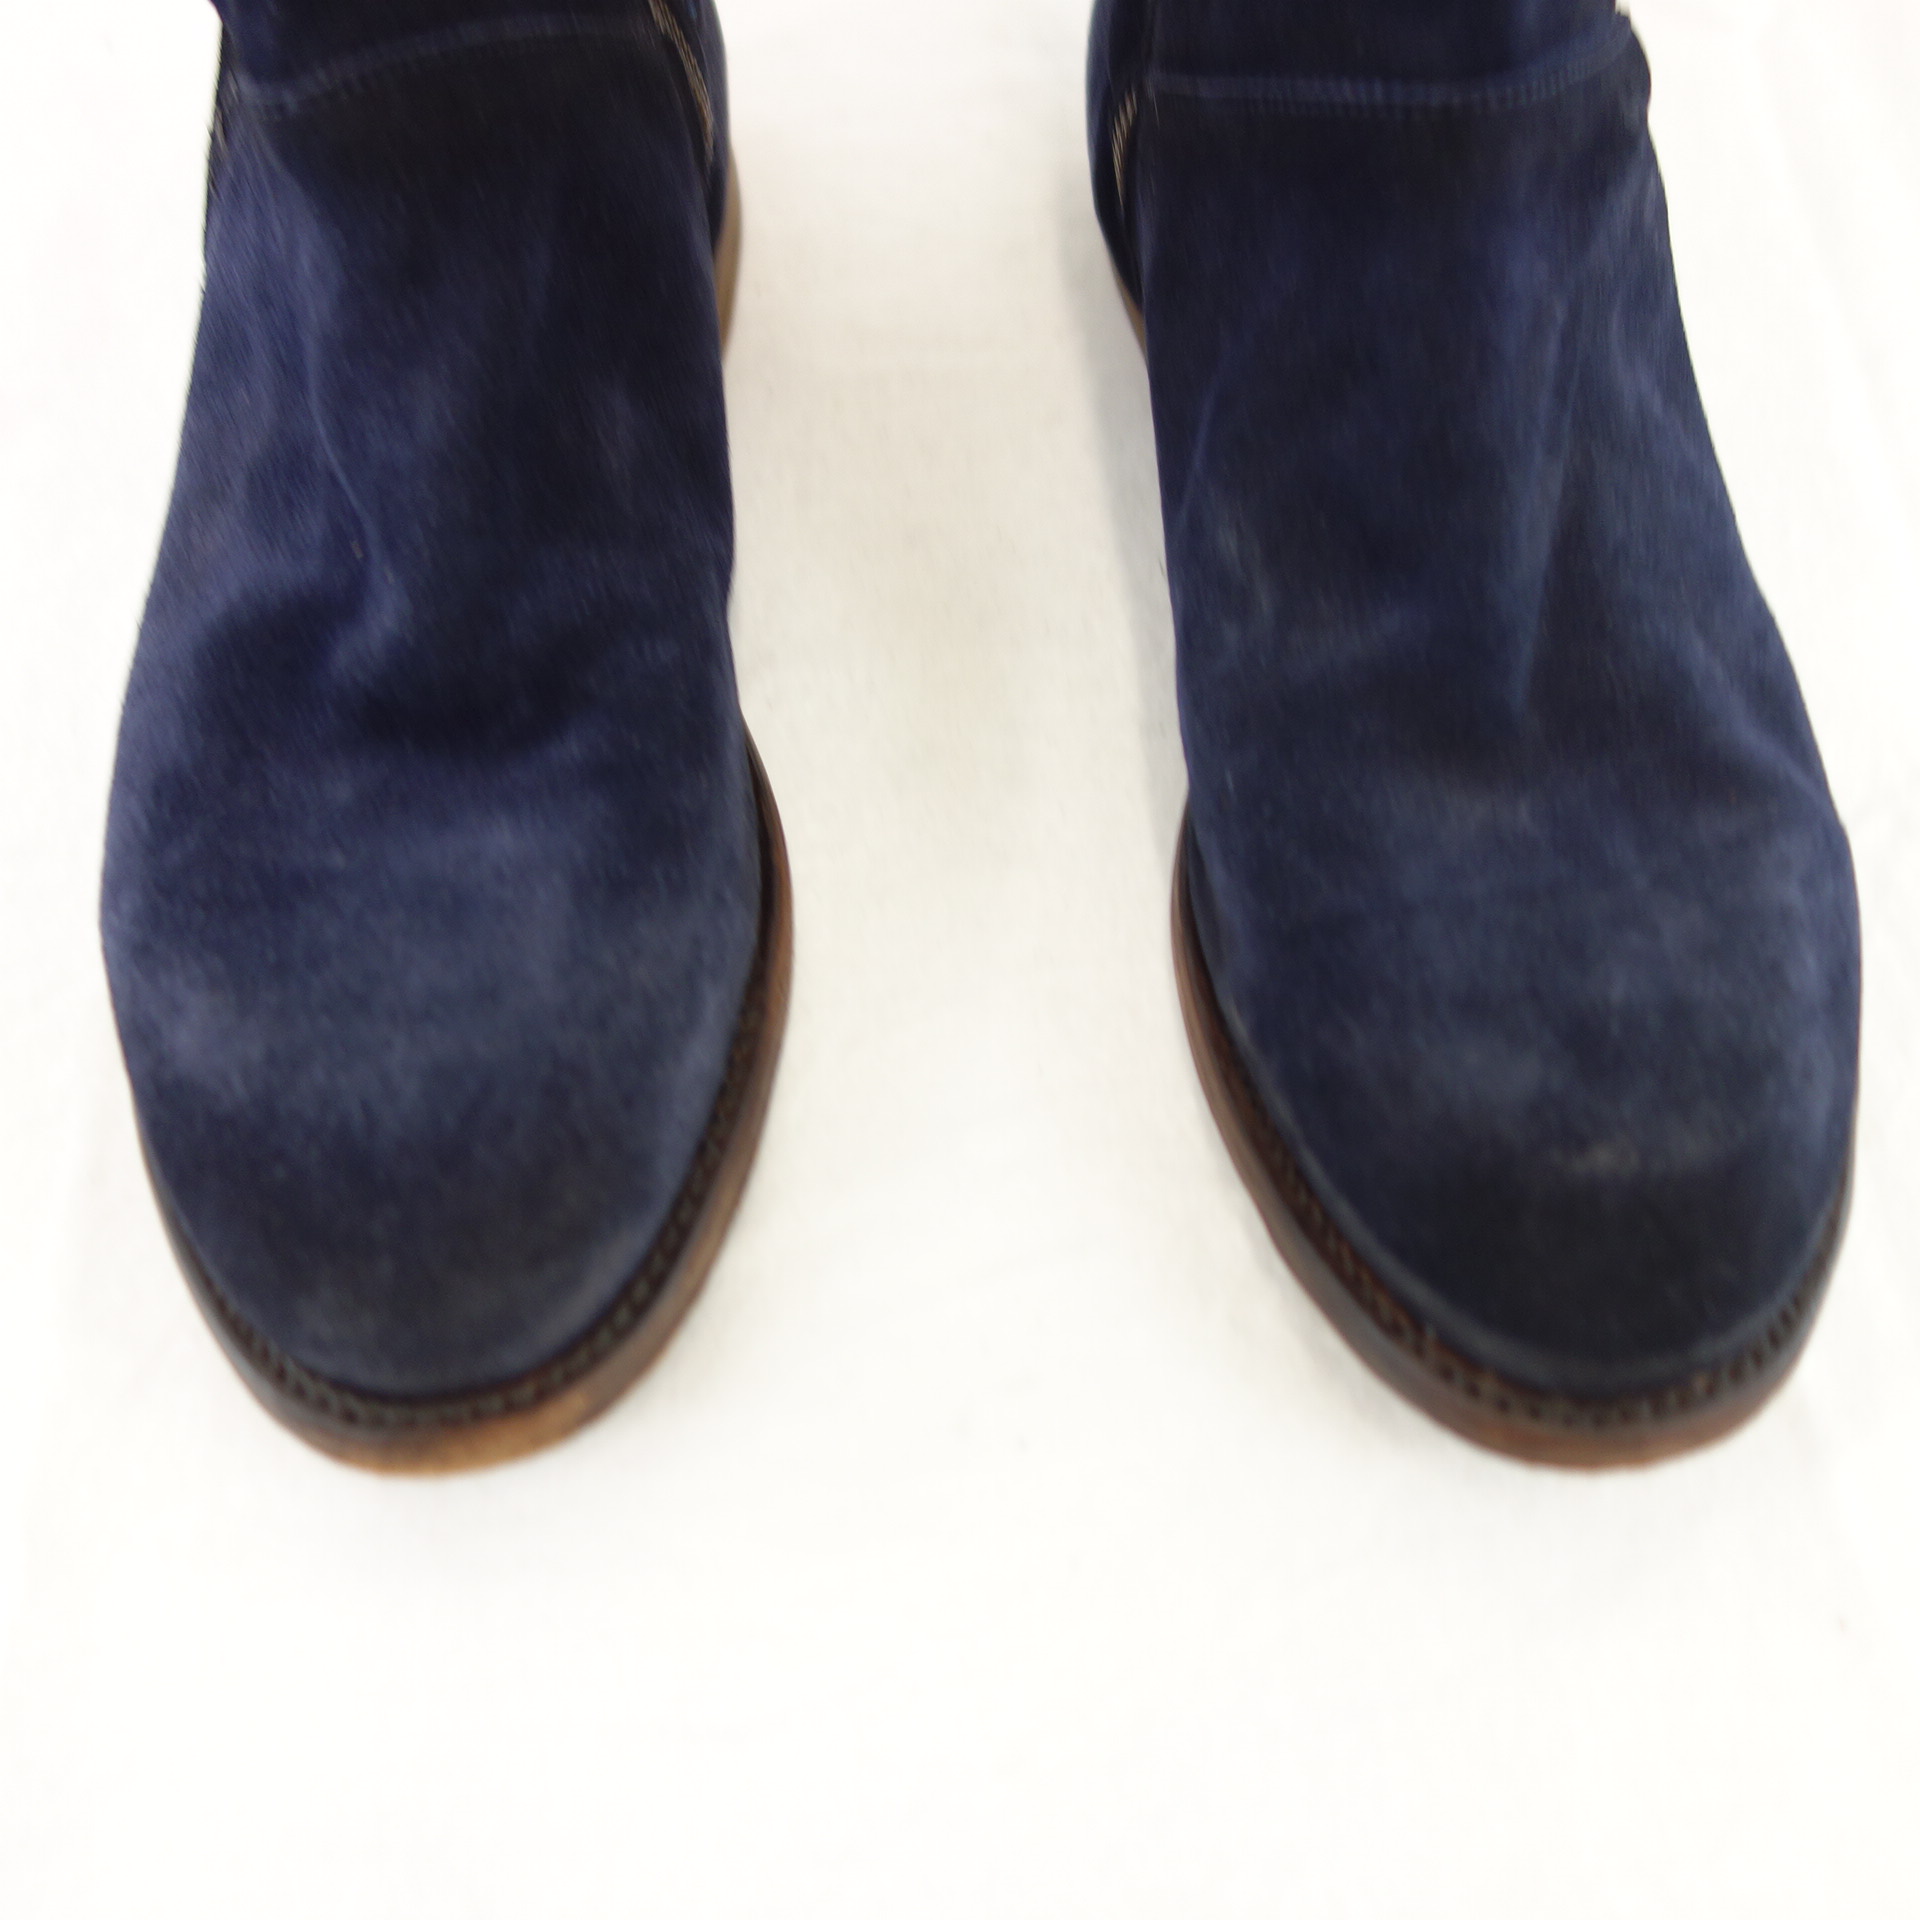 CORDWAINER Damen Schuhe Stiefeletten Boots Stiefel Wildleder Navy Blau 